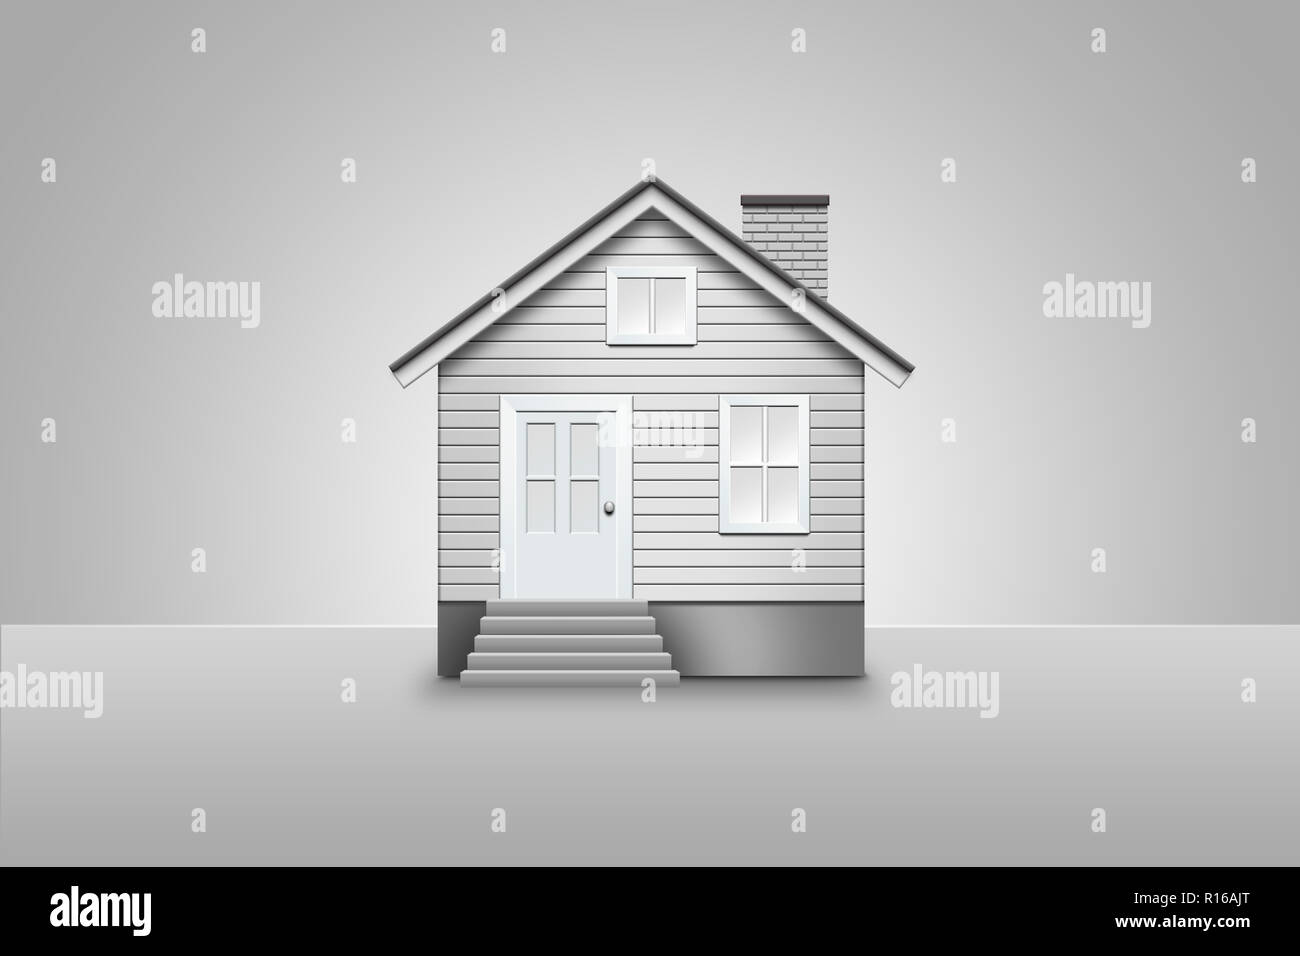 Imagen Digital de la fachada de la casa, blanco y negro Foto de stock